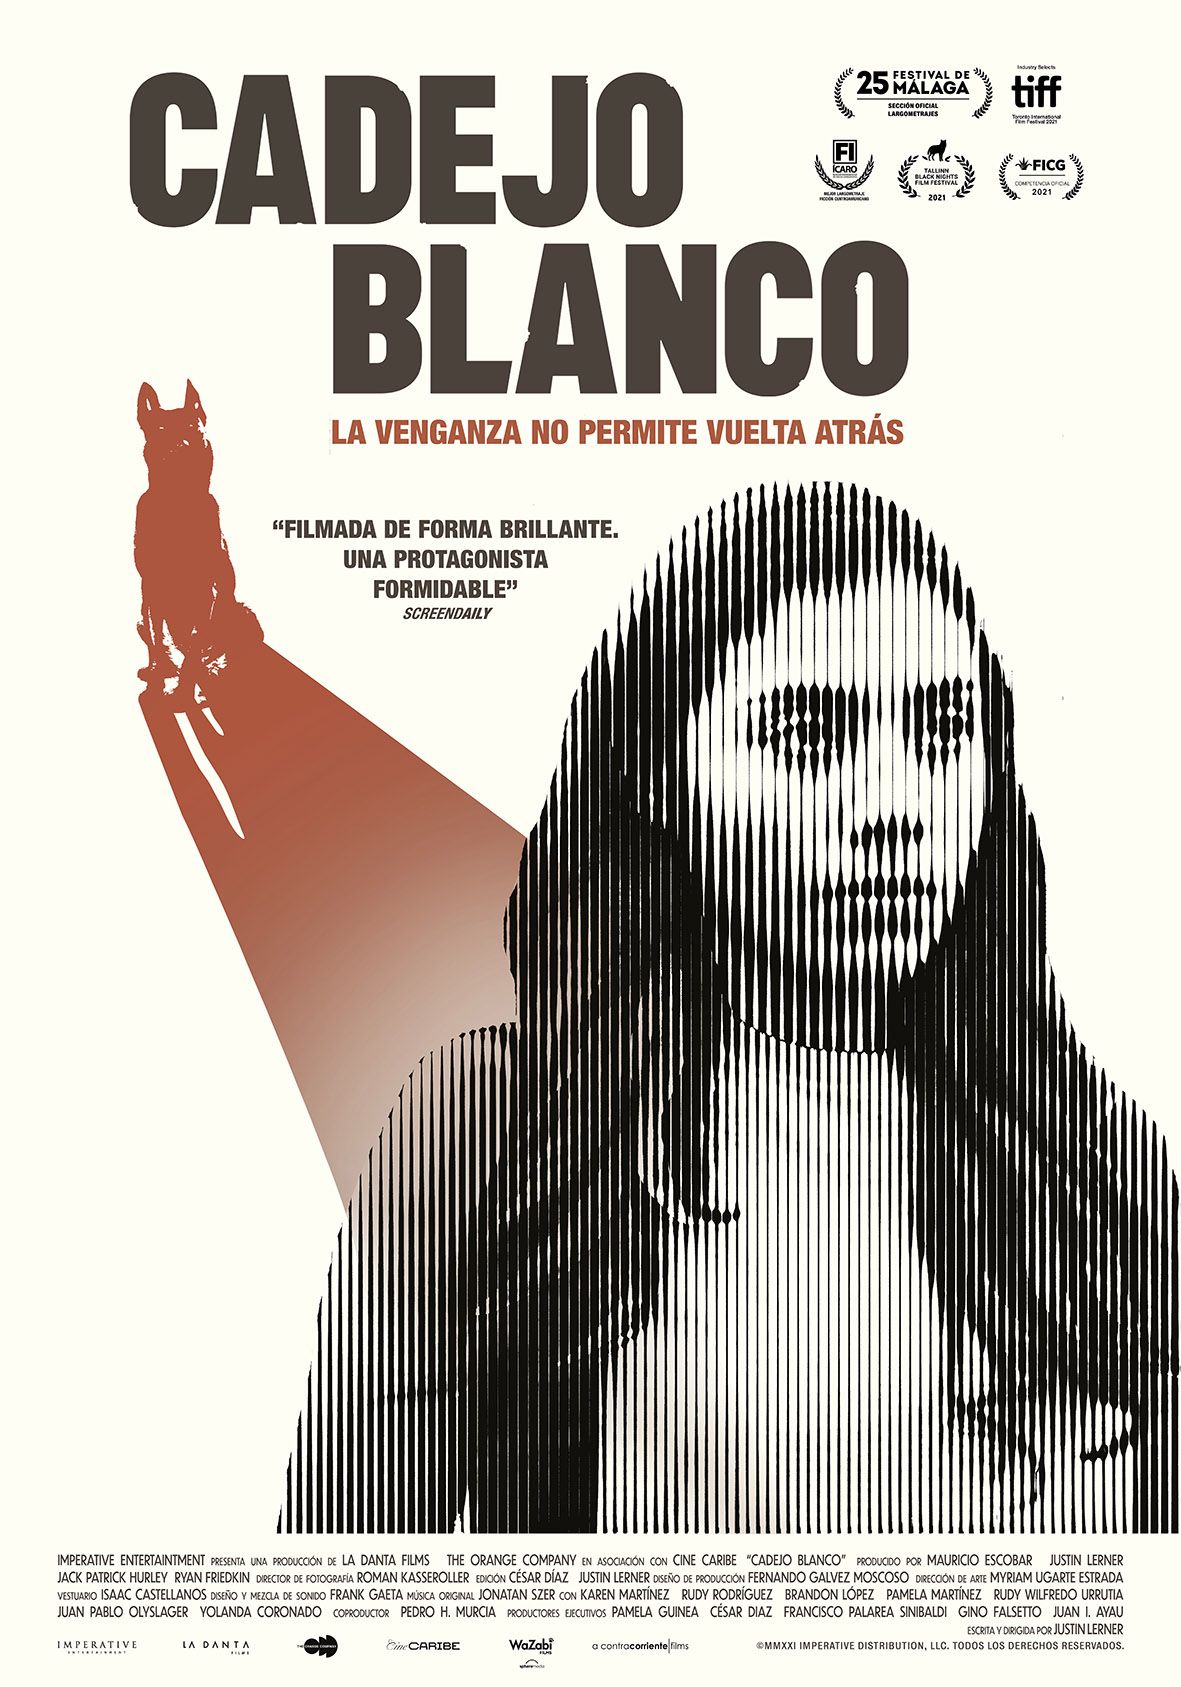 poster for Cadejo Blanco